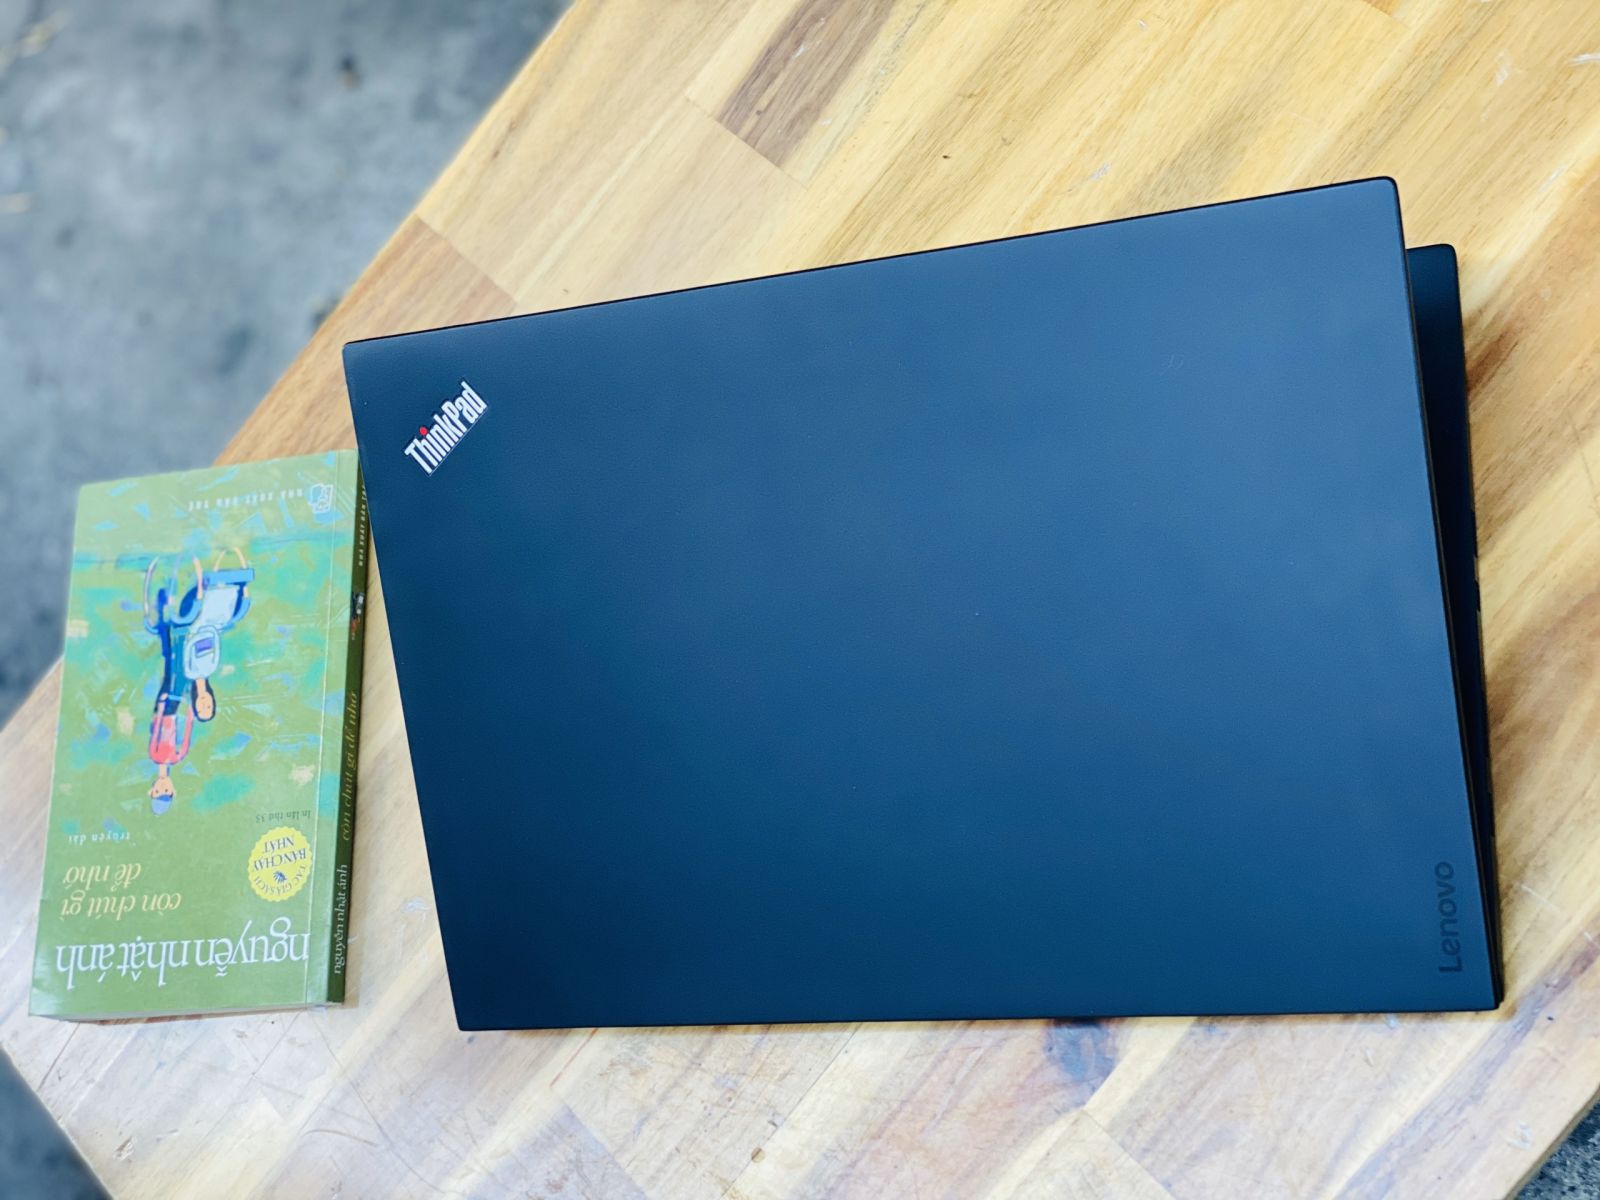 Laptop Lenovo Thinkpad X1 Carbon Gen 4/ i5 6300U/ 8G/ SSD256/ Siêu Bền/ Đẹp Keng/ Giá rẻ2